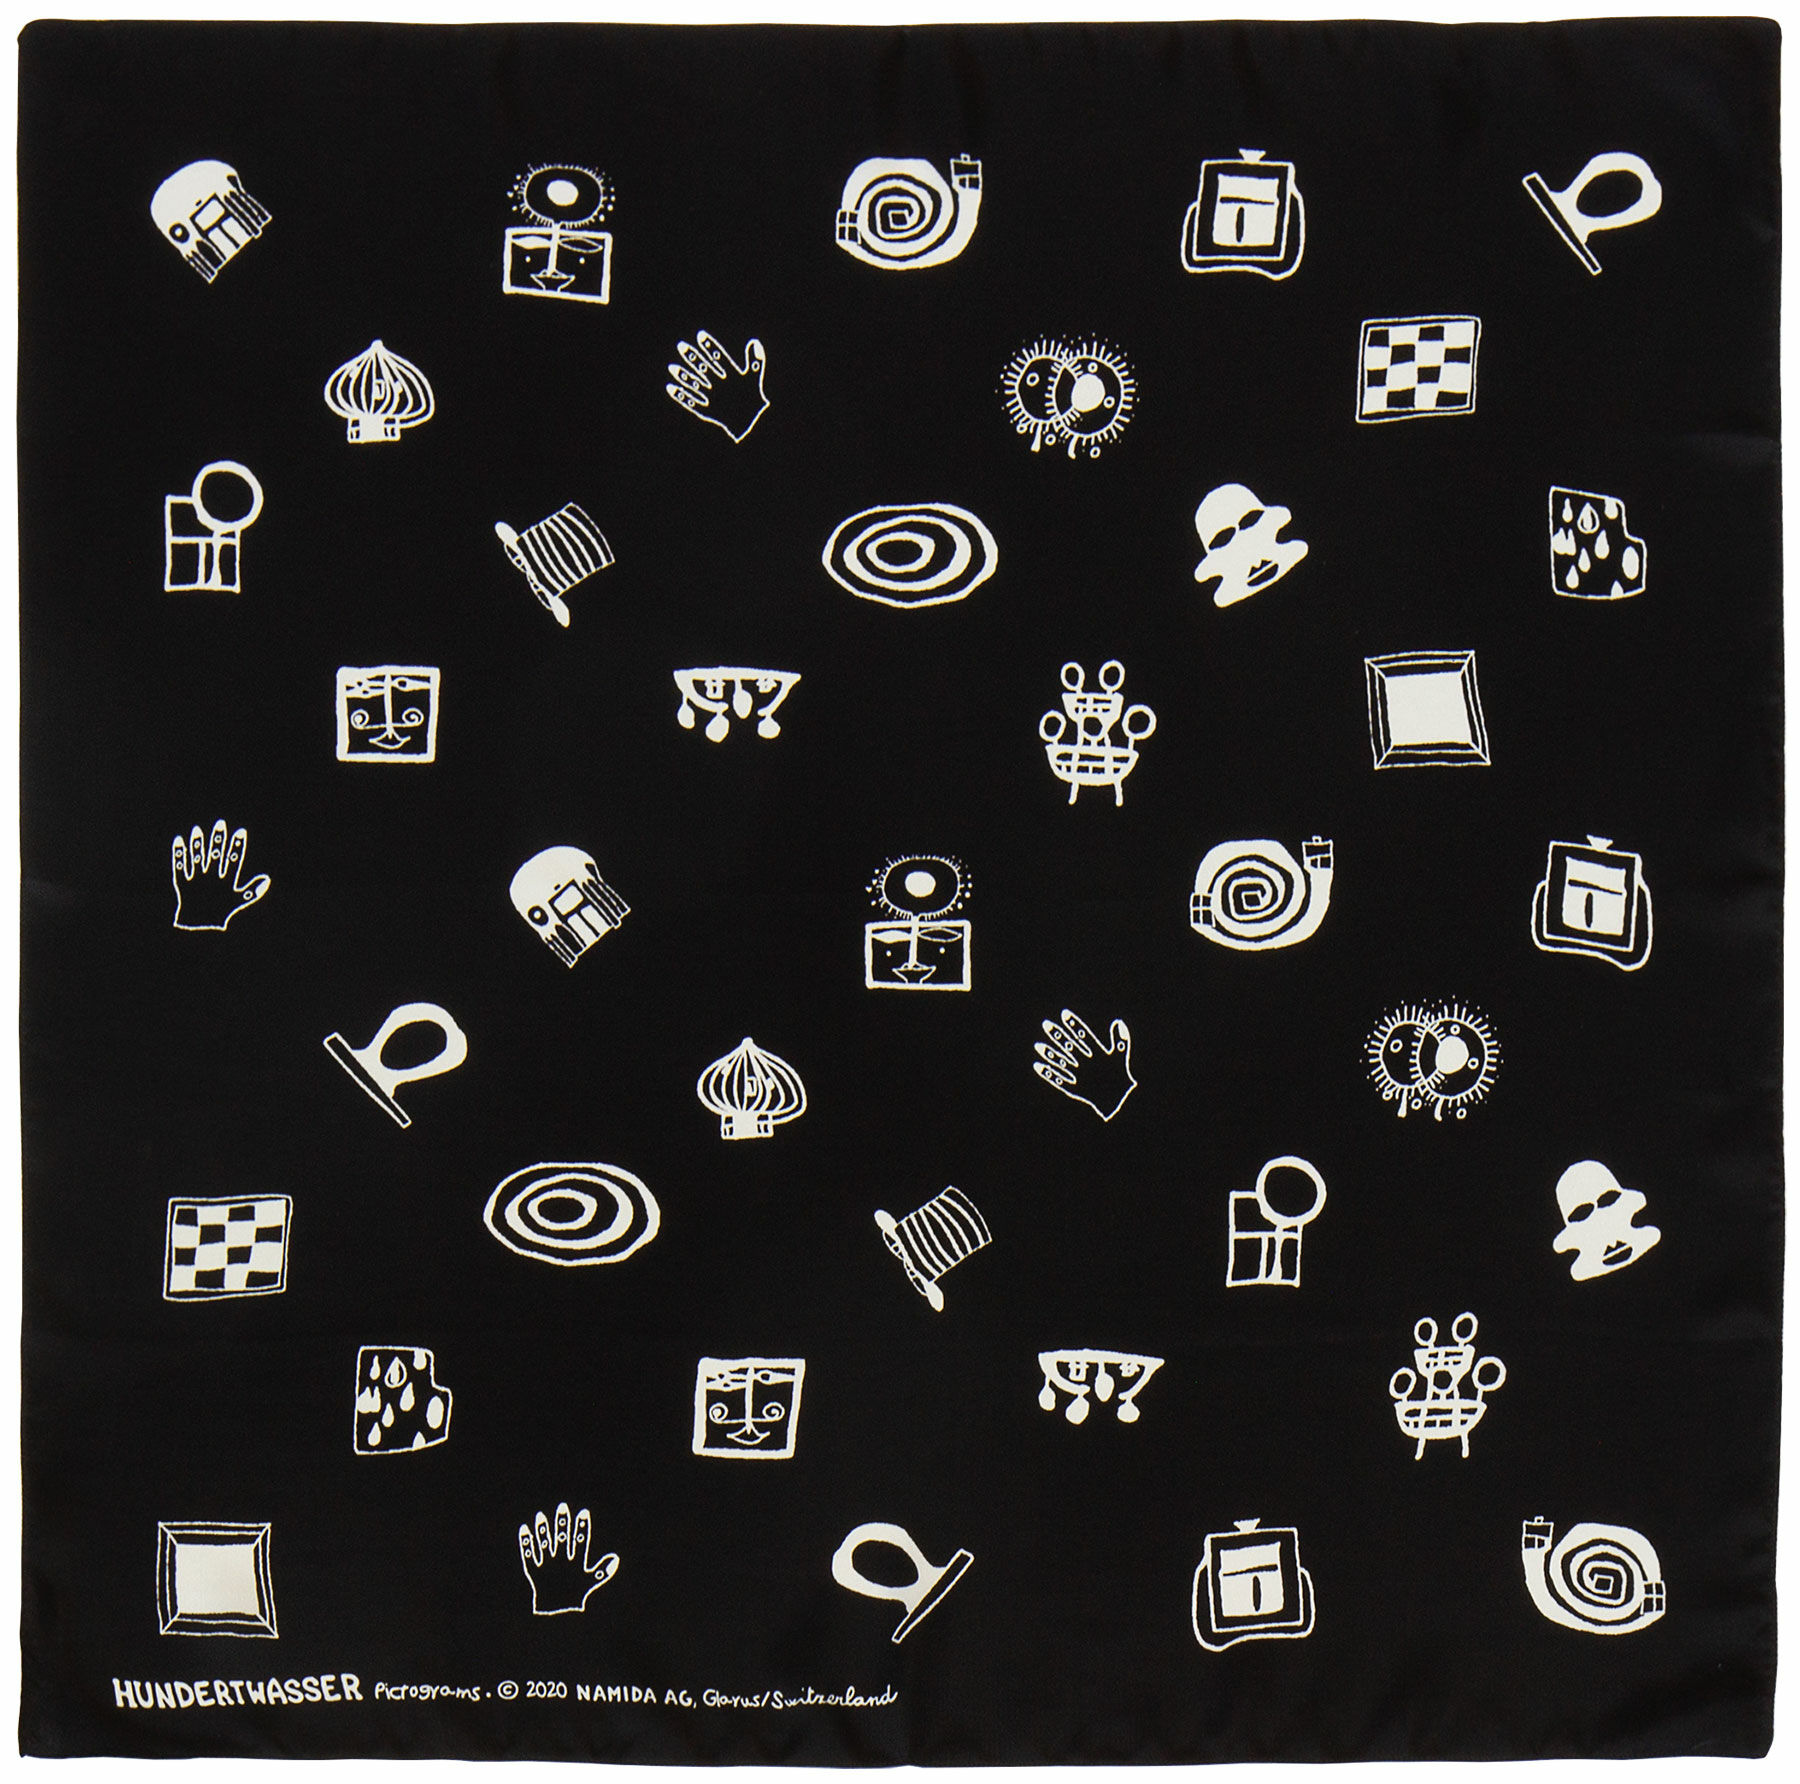 Zijden foulard "Tuin van tekens" (1994) von Friedensreich Hundertwasser